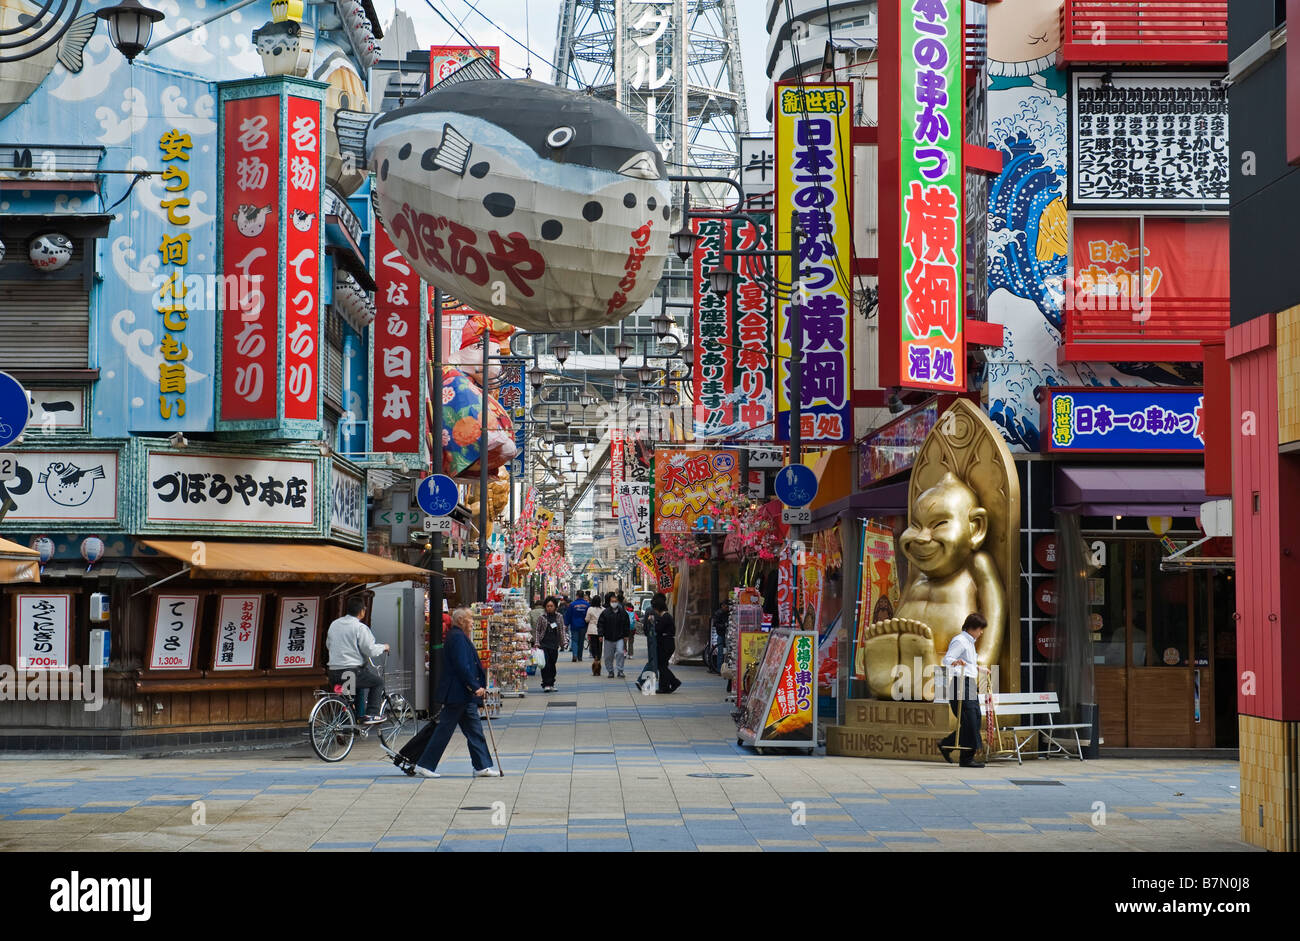 Osaka, Japan. Eine Straße im Shinsekai-Viertel, mit einem überhöhten Fisch, der ein "fugu"-Restaurant (der giftige Pufferfisch) wirbt Stockfoto